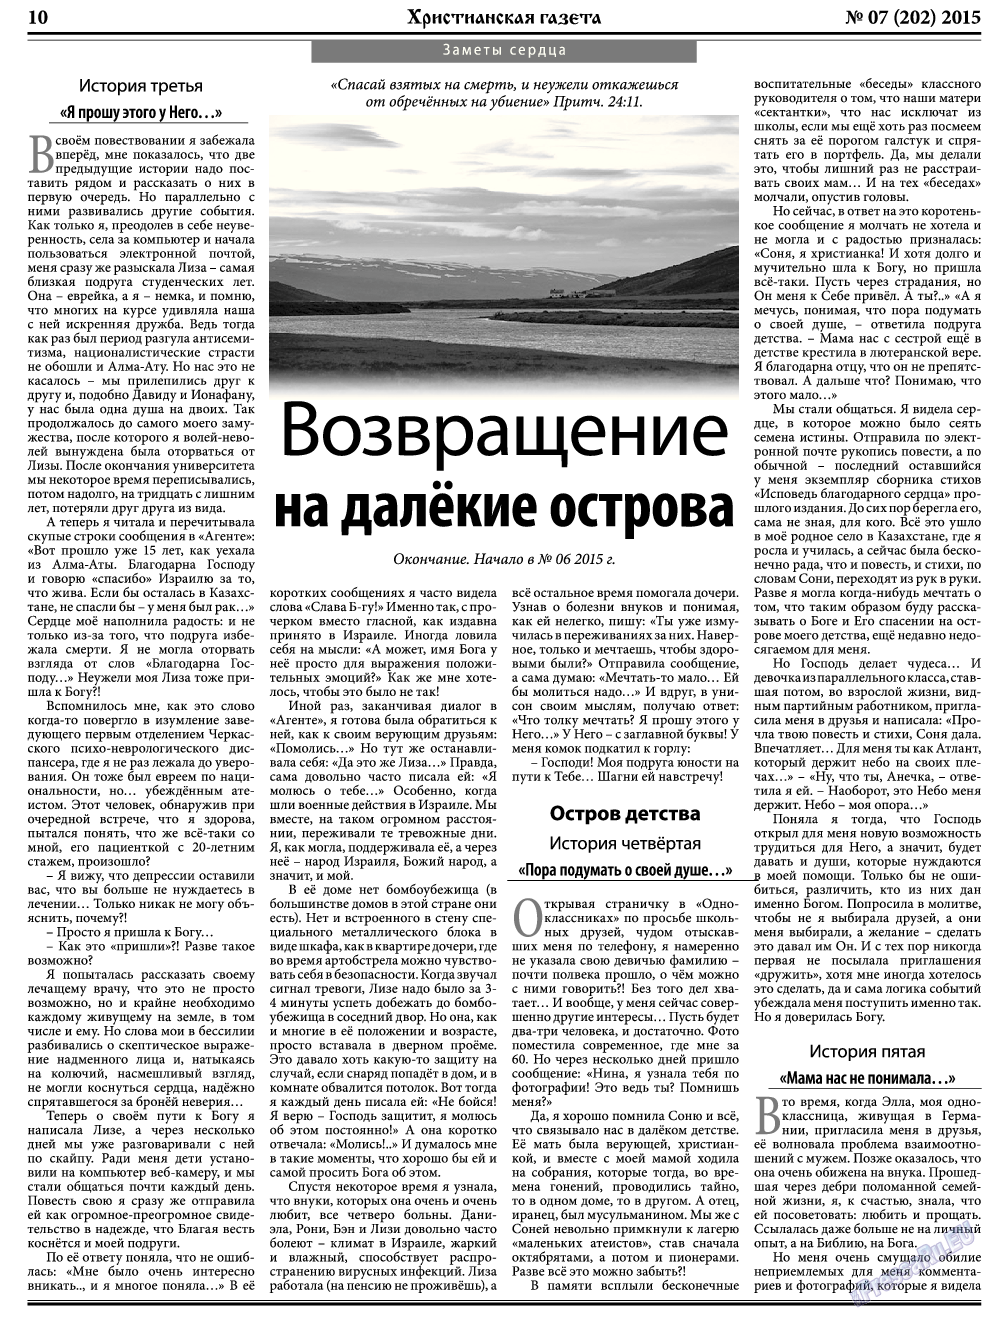 Христианская газета, газета. 2015 №7 стр.10